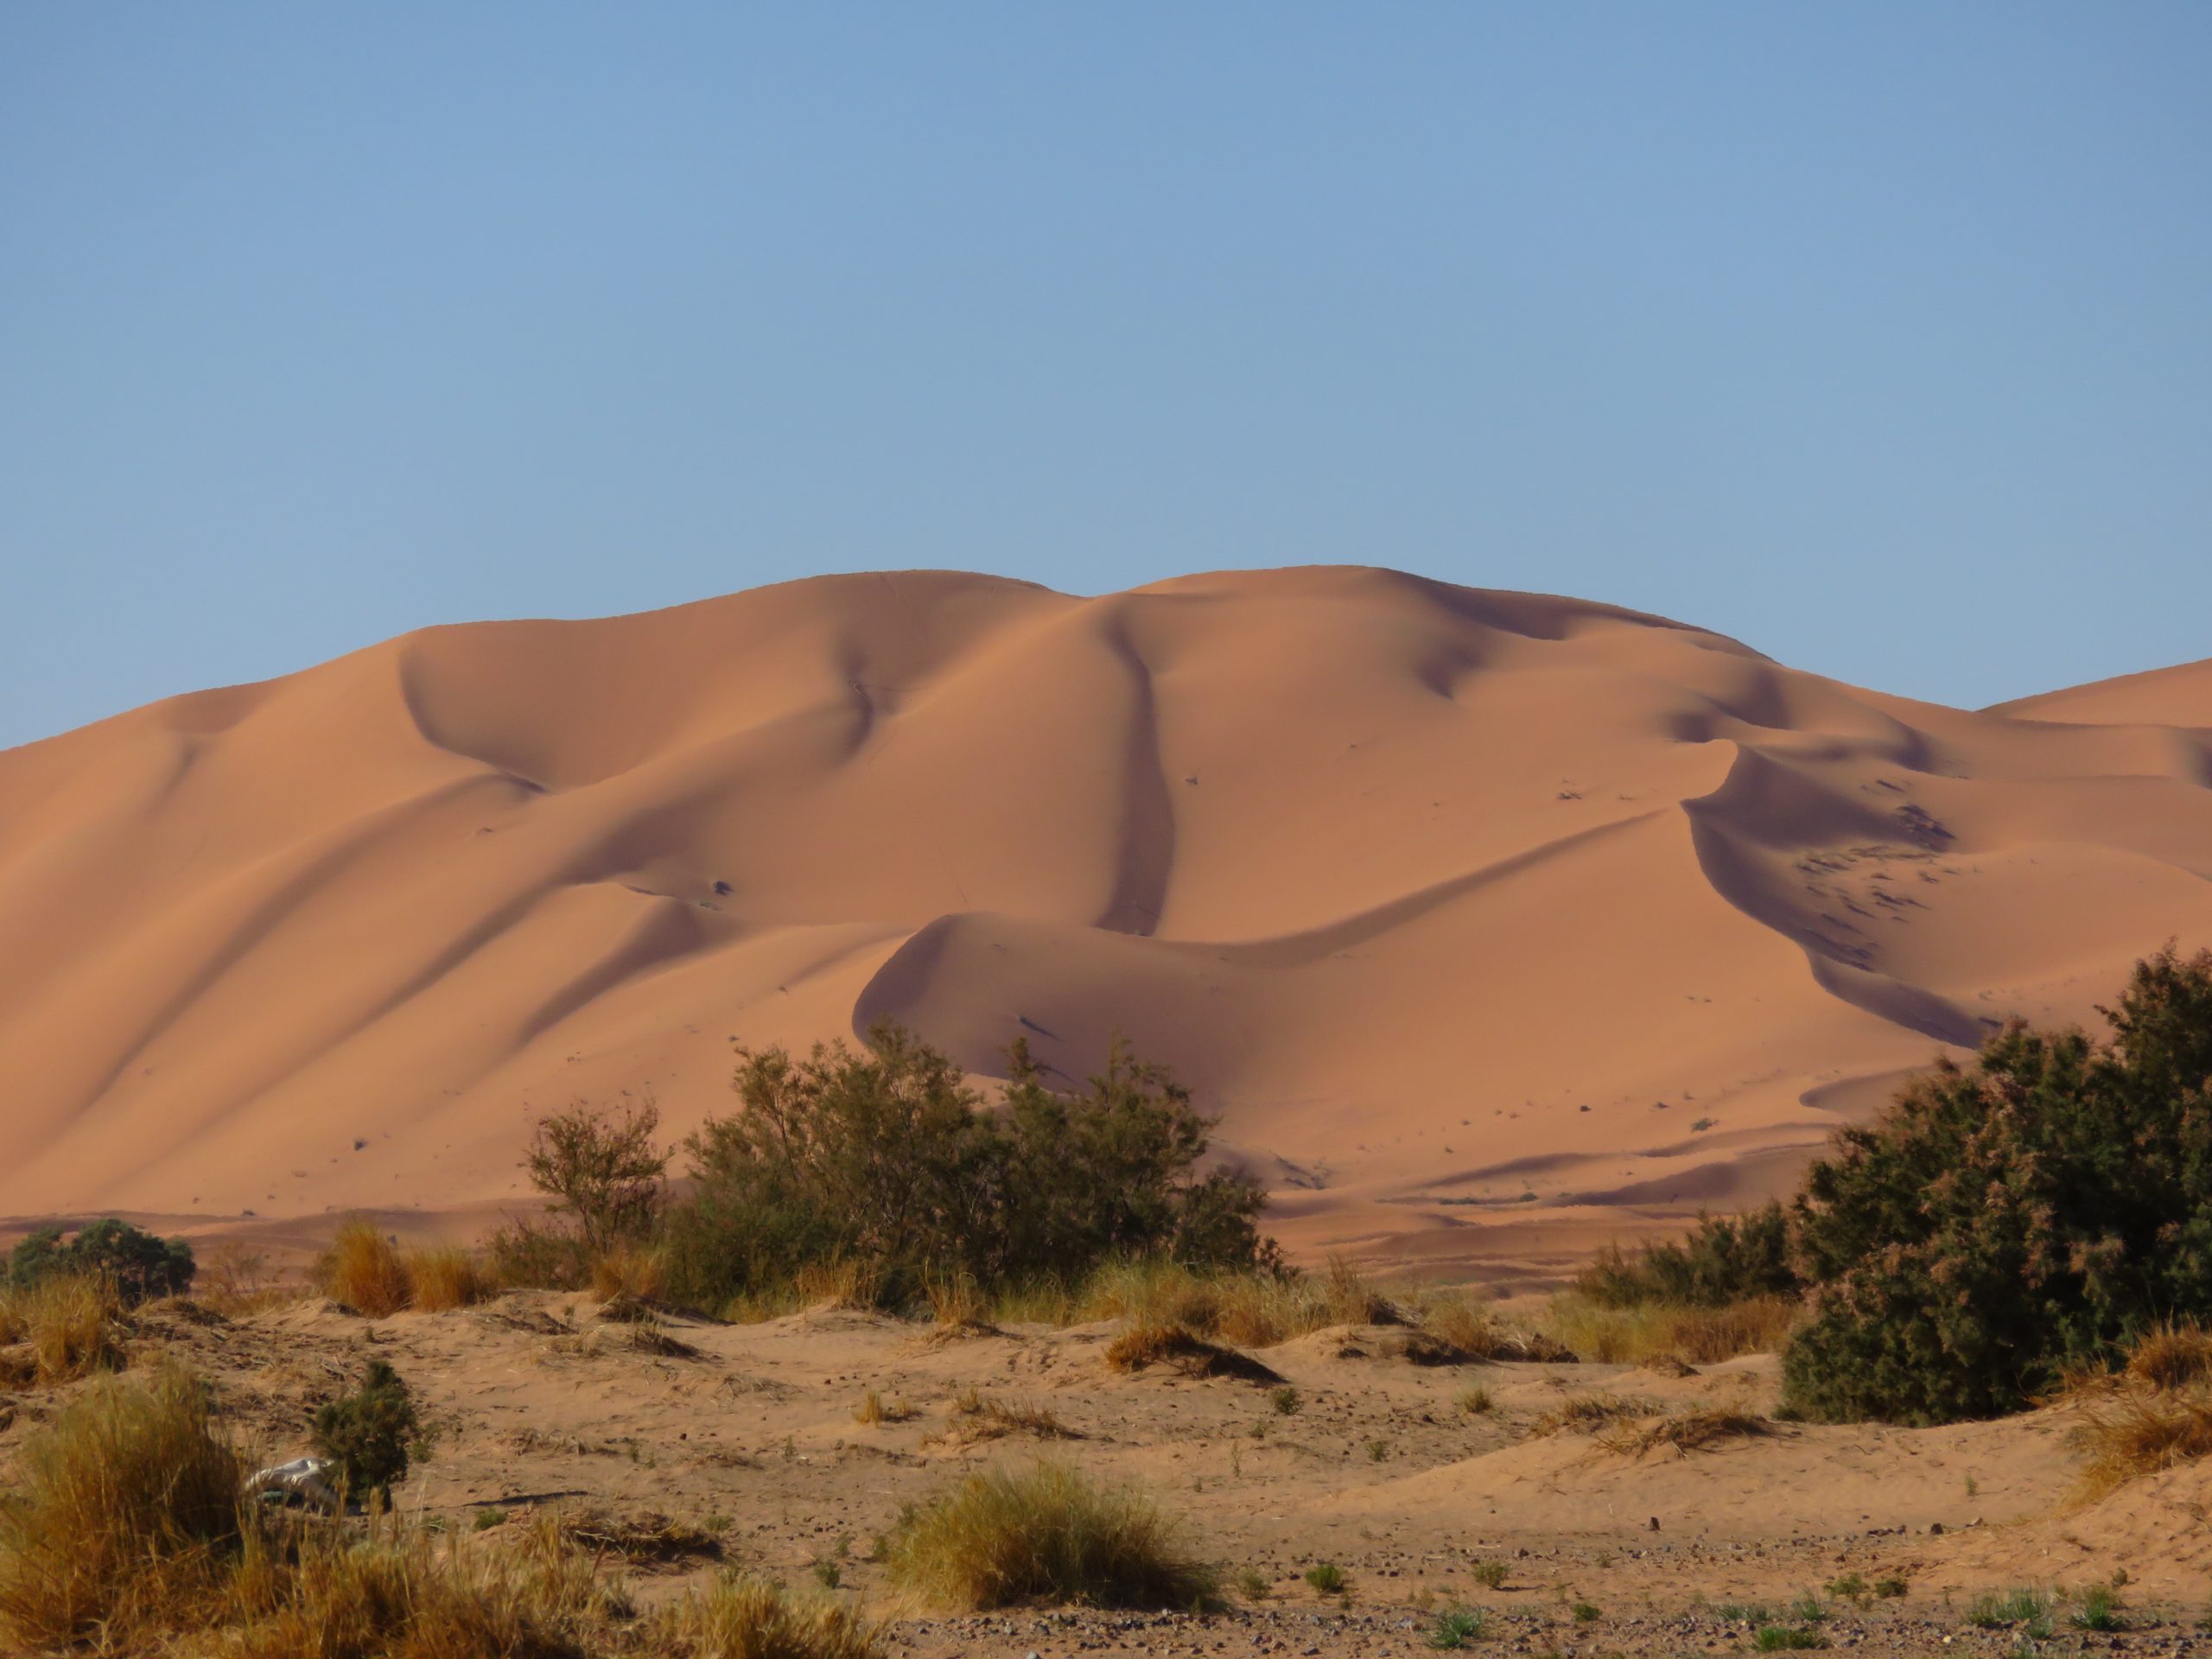 Dezember: Erfoud und die Wüste Erg Chebbi